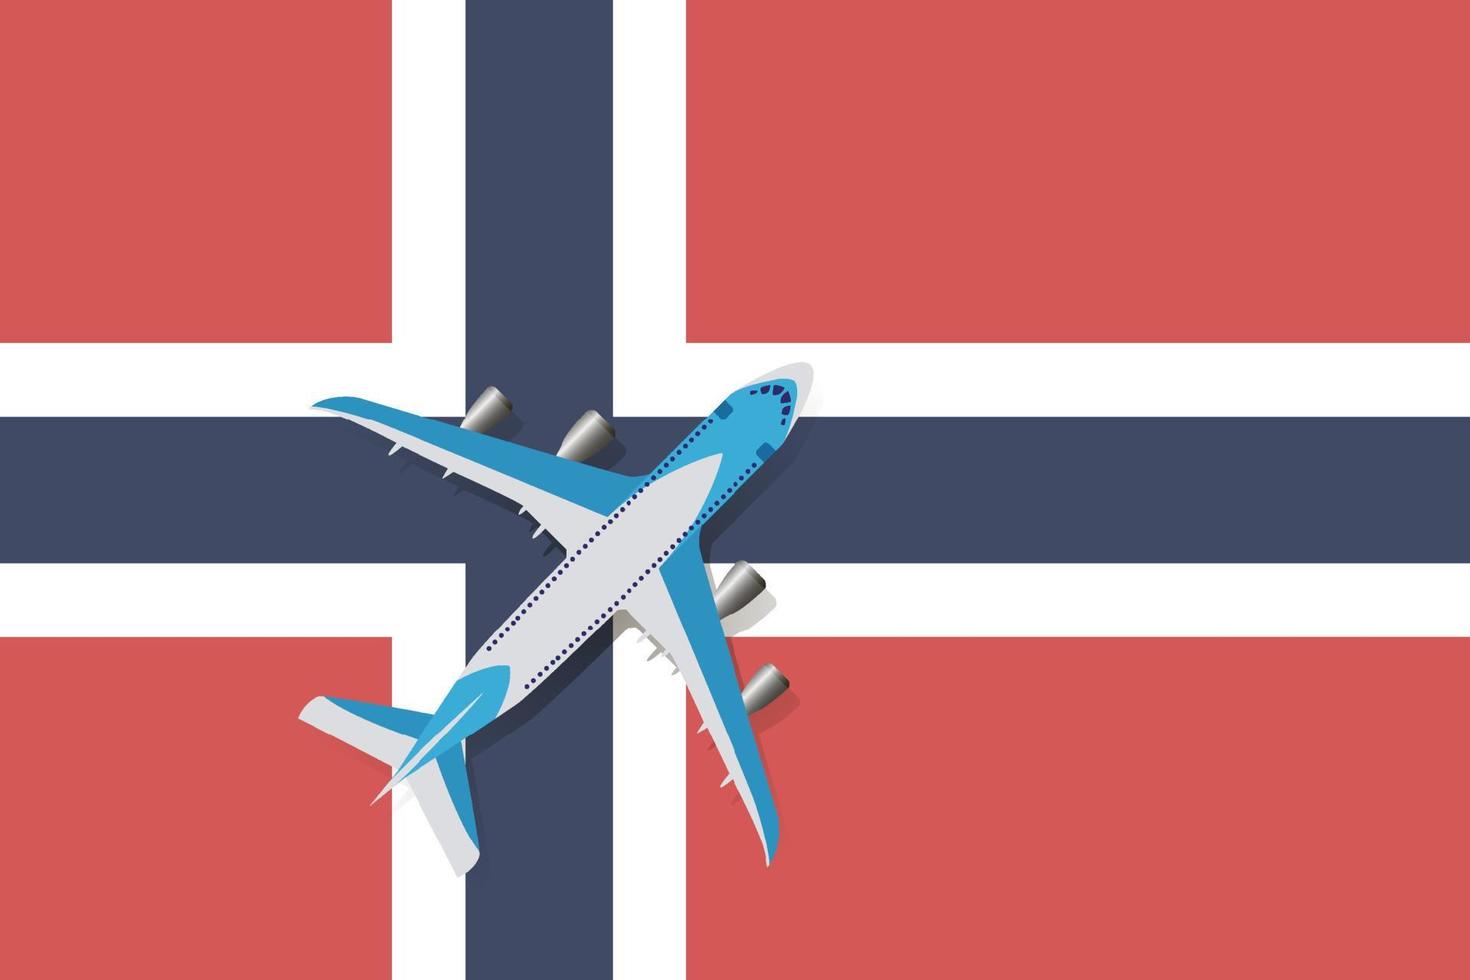 vectorillustratie van een passagiersvliegtuig dat over de vlag van noorwegen vliegt. concept van toerisme en reizen vector